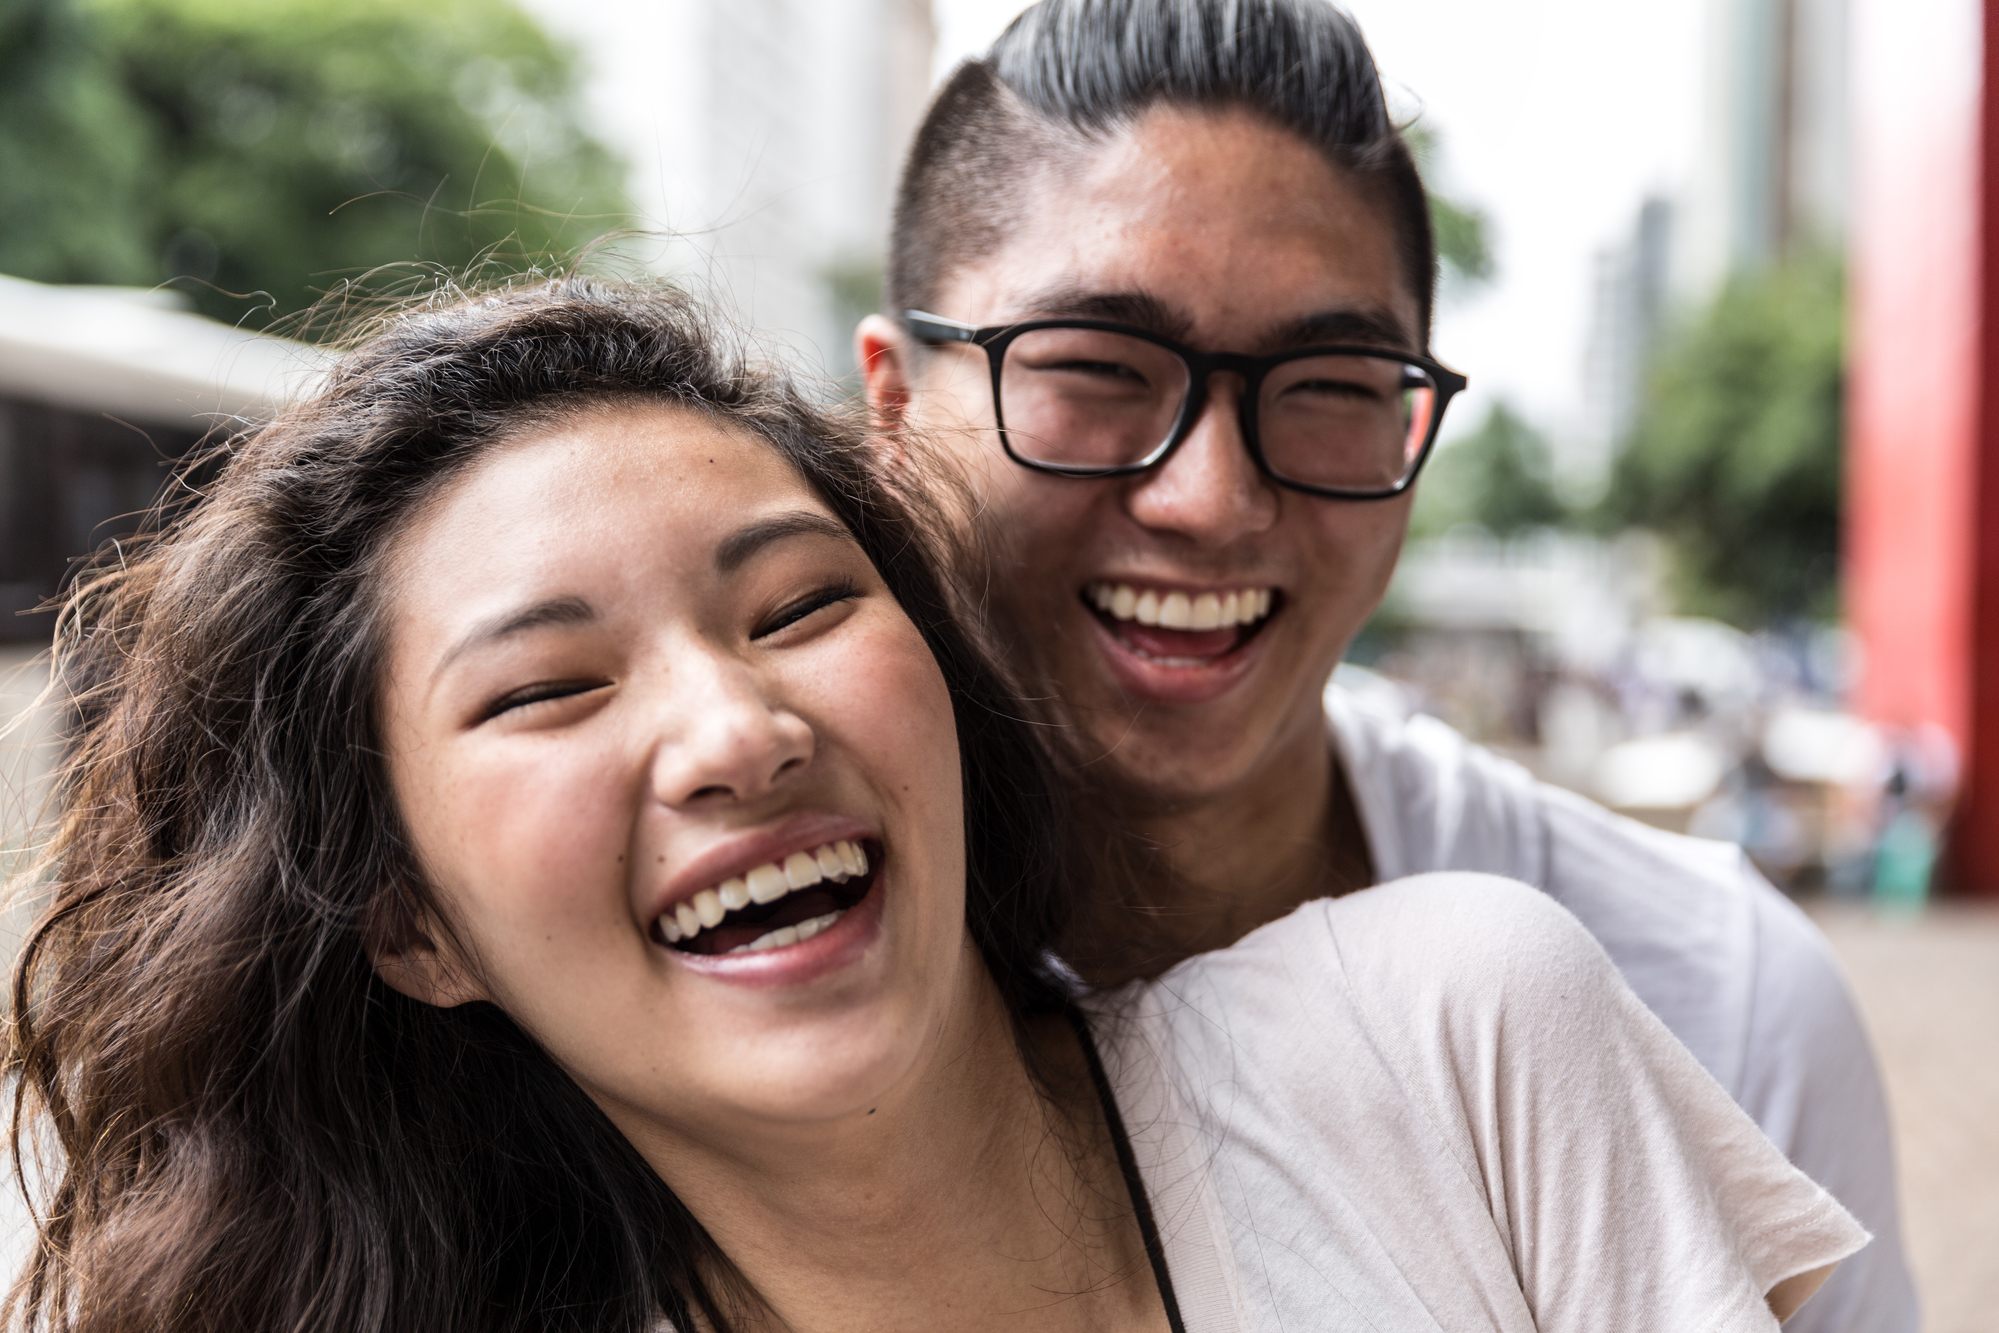 (完滿舉行) 約會技巧講座 - 創造初次見面時的最佳狀態 - 2019年3月5日 香港交友約會業協會 Hong Kong Speed Dating Federation - Speed Dating , 一對一約會, 單對單約會, 約會行業, 約會配對